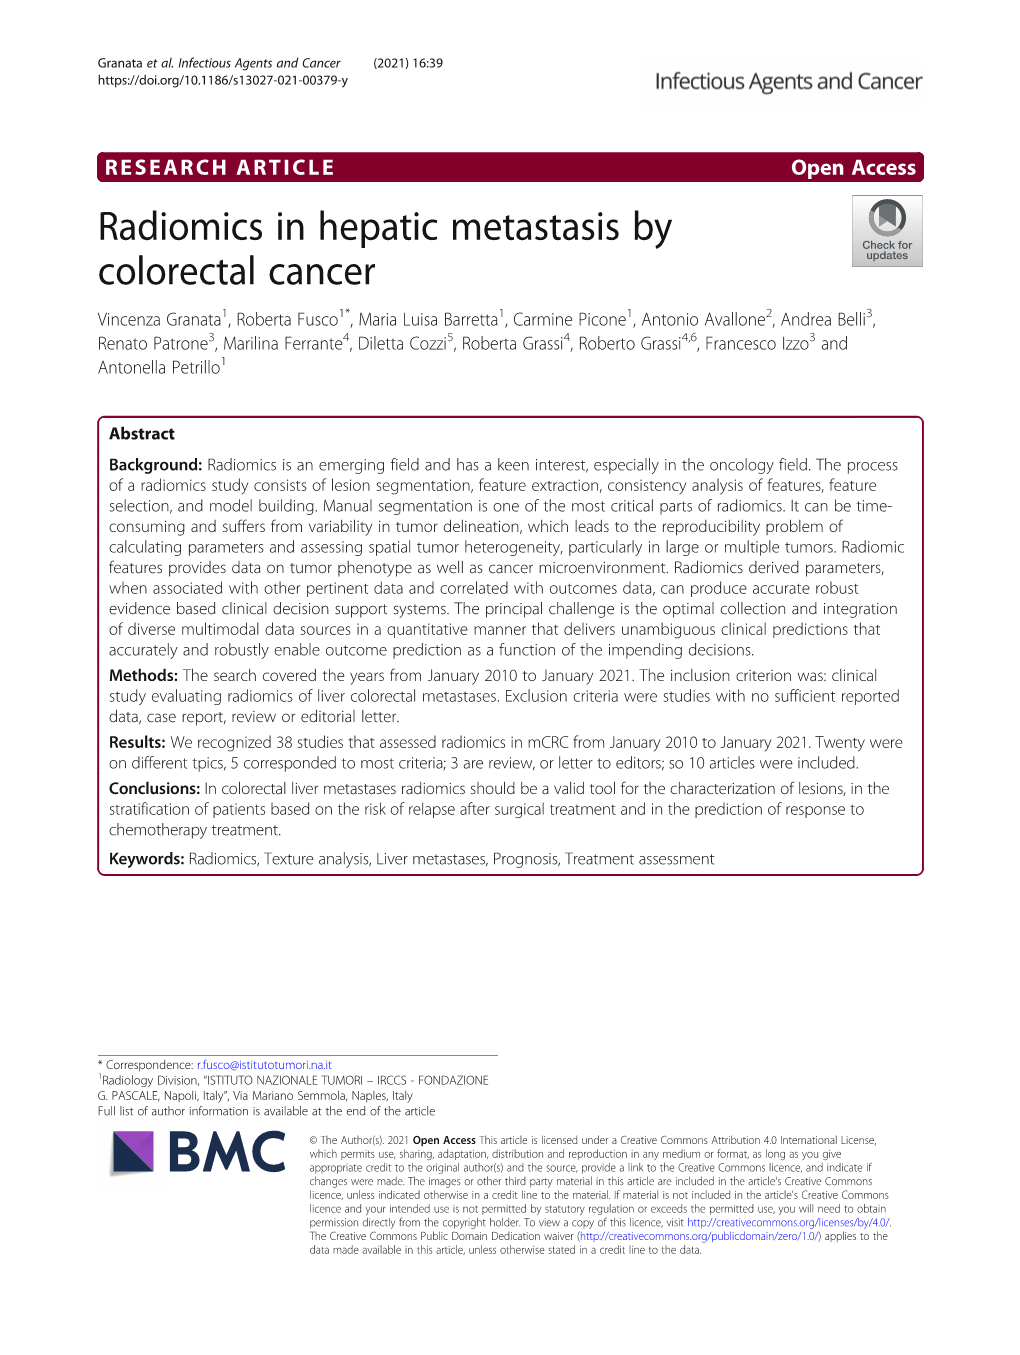 Radiomics in Hepatic Metastasis by Colorectal Cancer